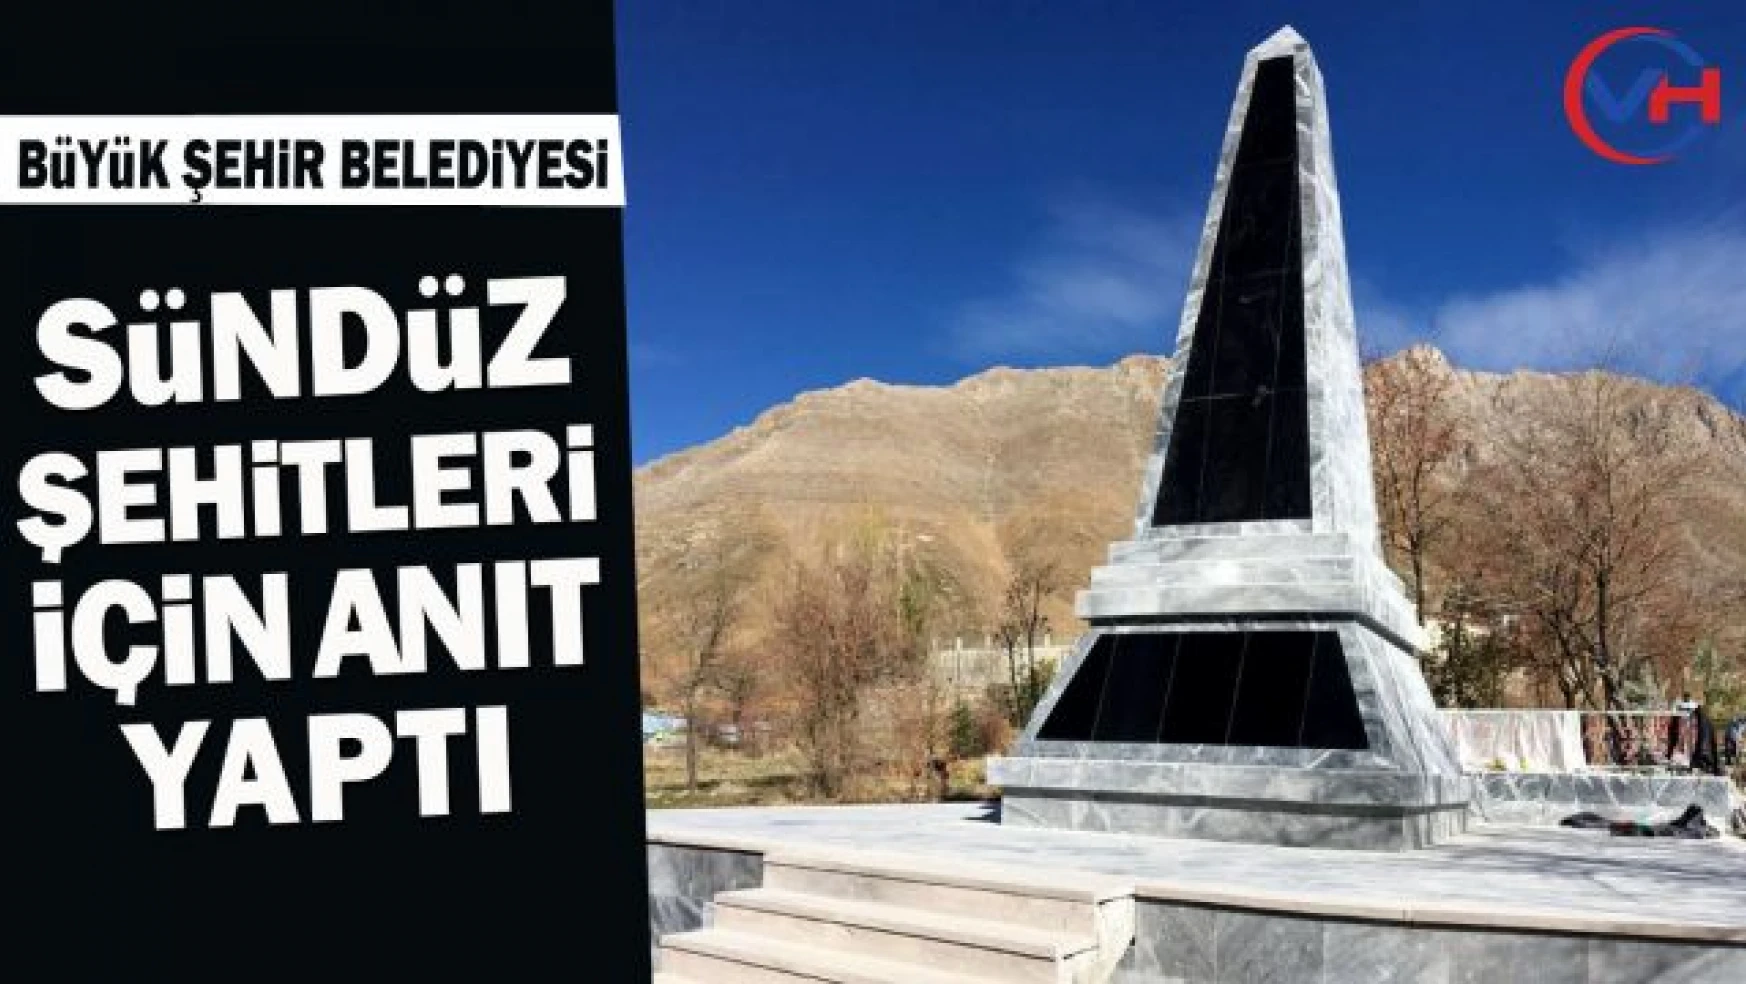 Van Büyükşehir Belediyesi, Sündüz Şehitleri için anıt yaptı